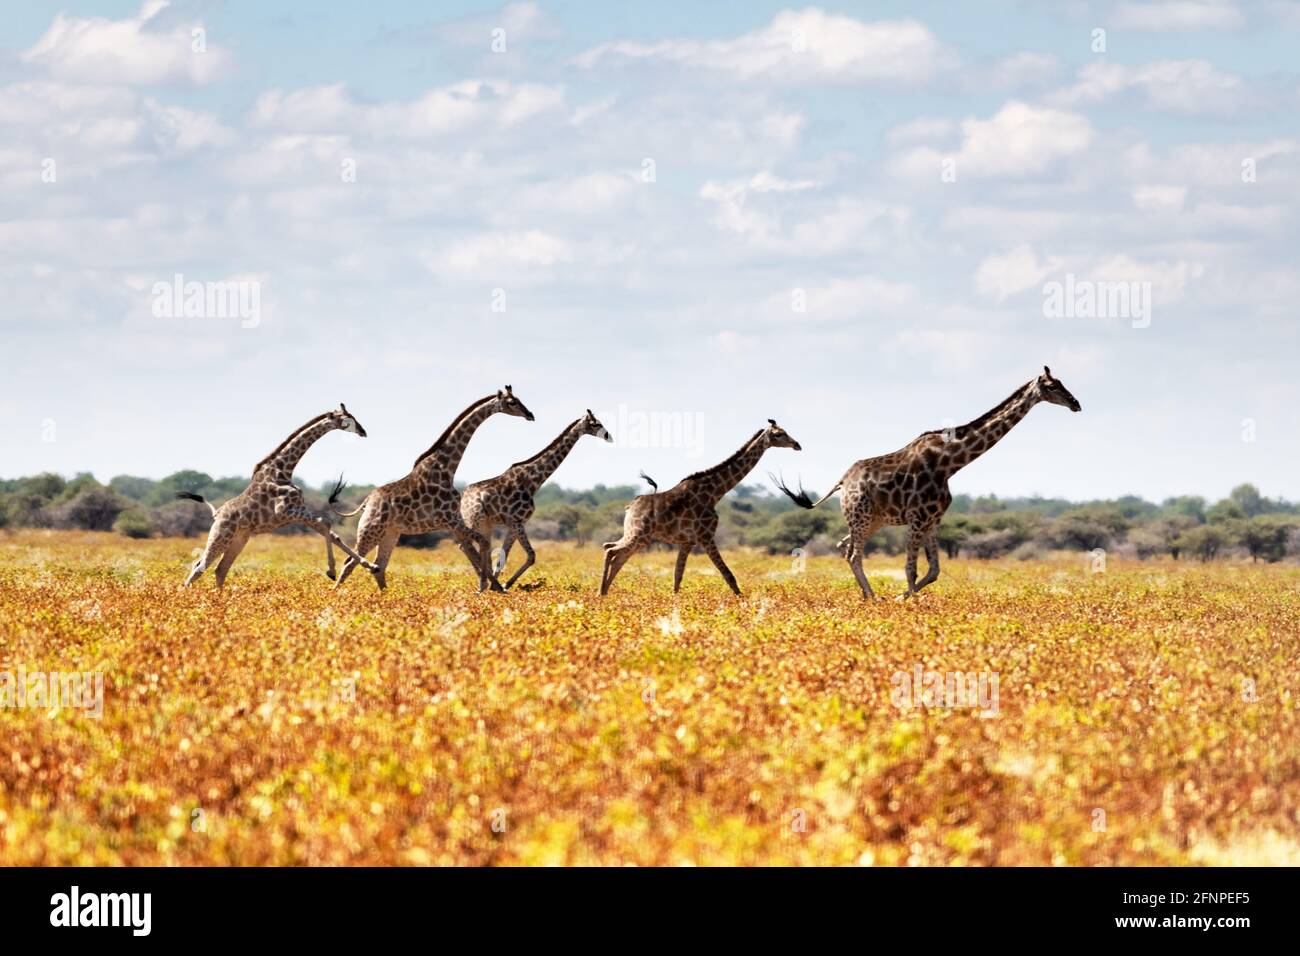 Famiglia Giraffe in erba gialla secca di savana africana Foto Stock